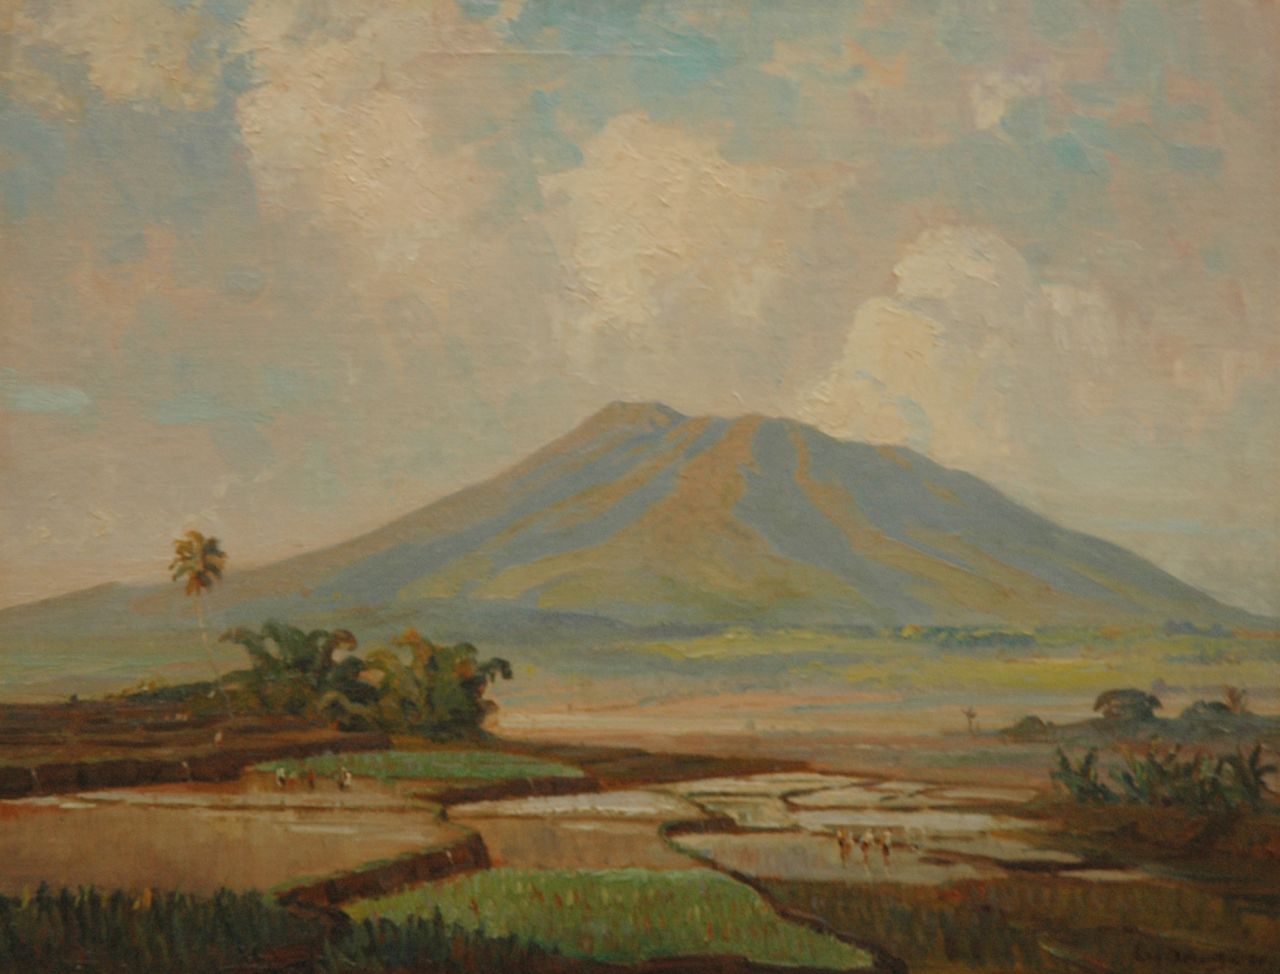 Dezentjé E.  | Ernest Dezentjé, Pickers in the ricefields near a vulcano, Öl auf Leinwand  auf Holzfaser 46,9 x 60,5 cm, signed l.r. und dated '28